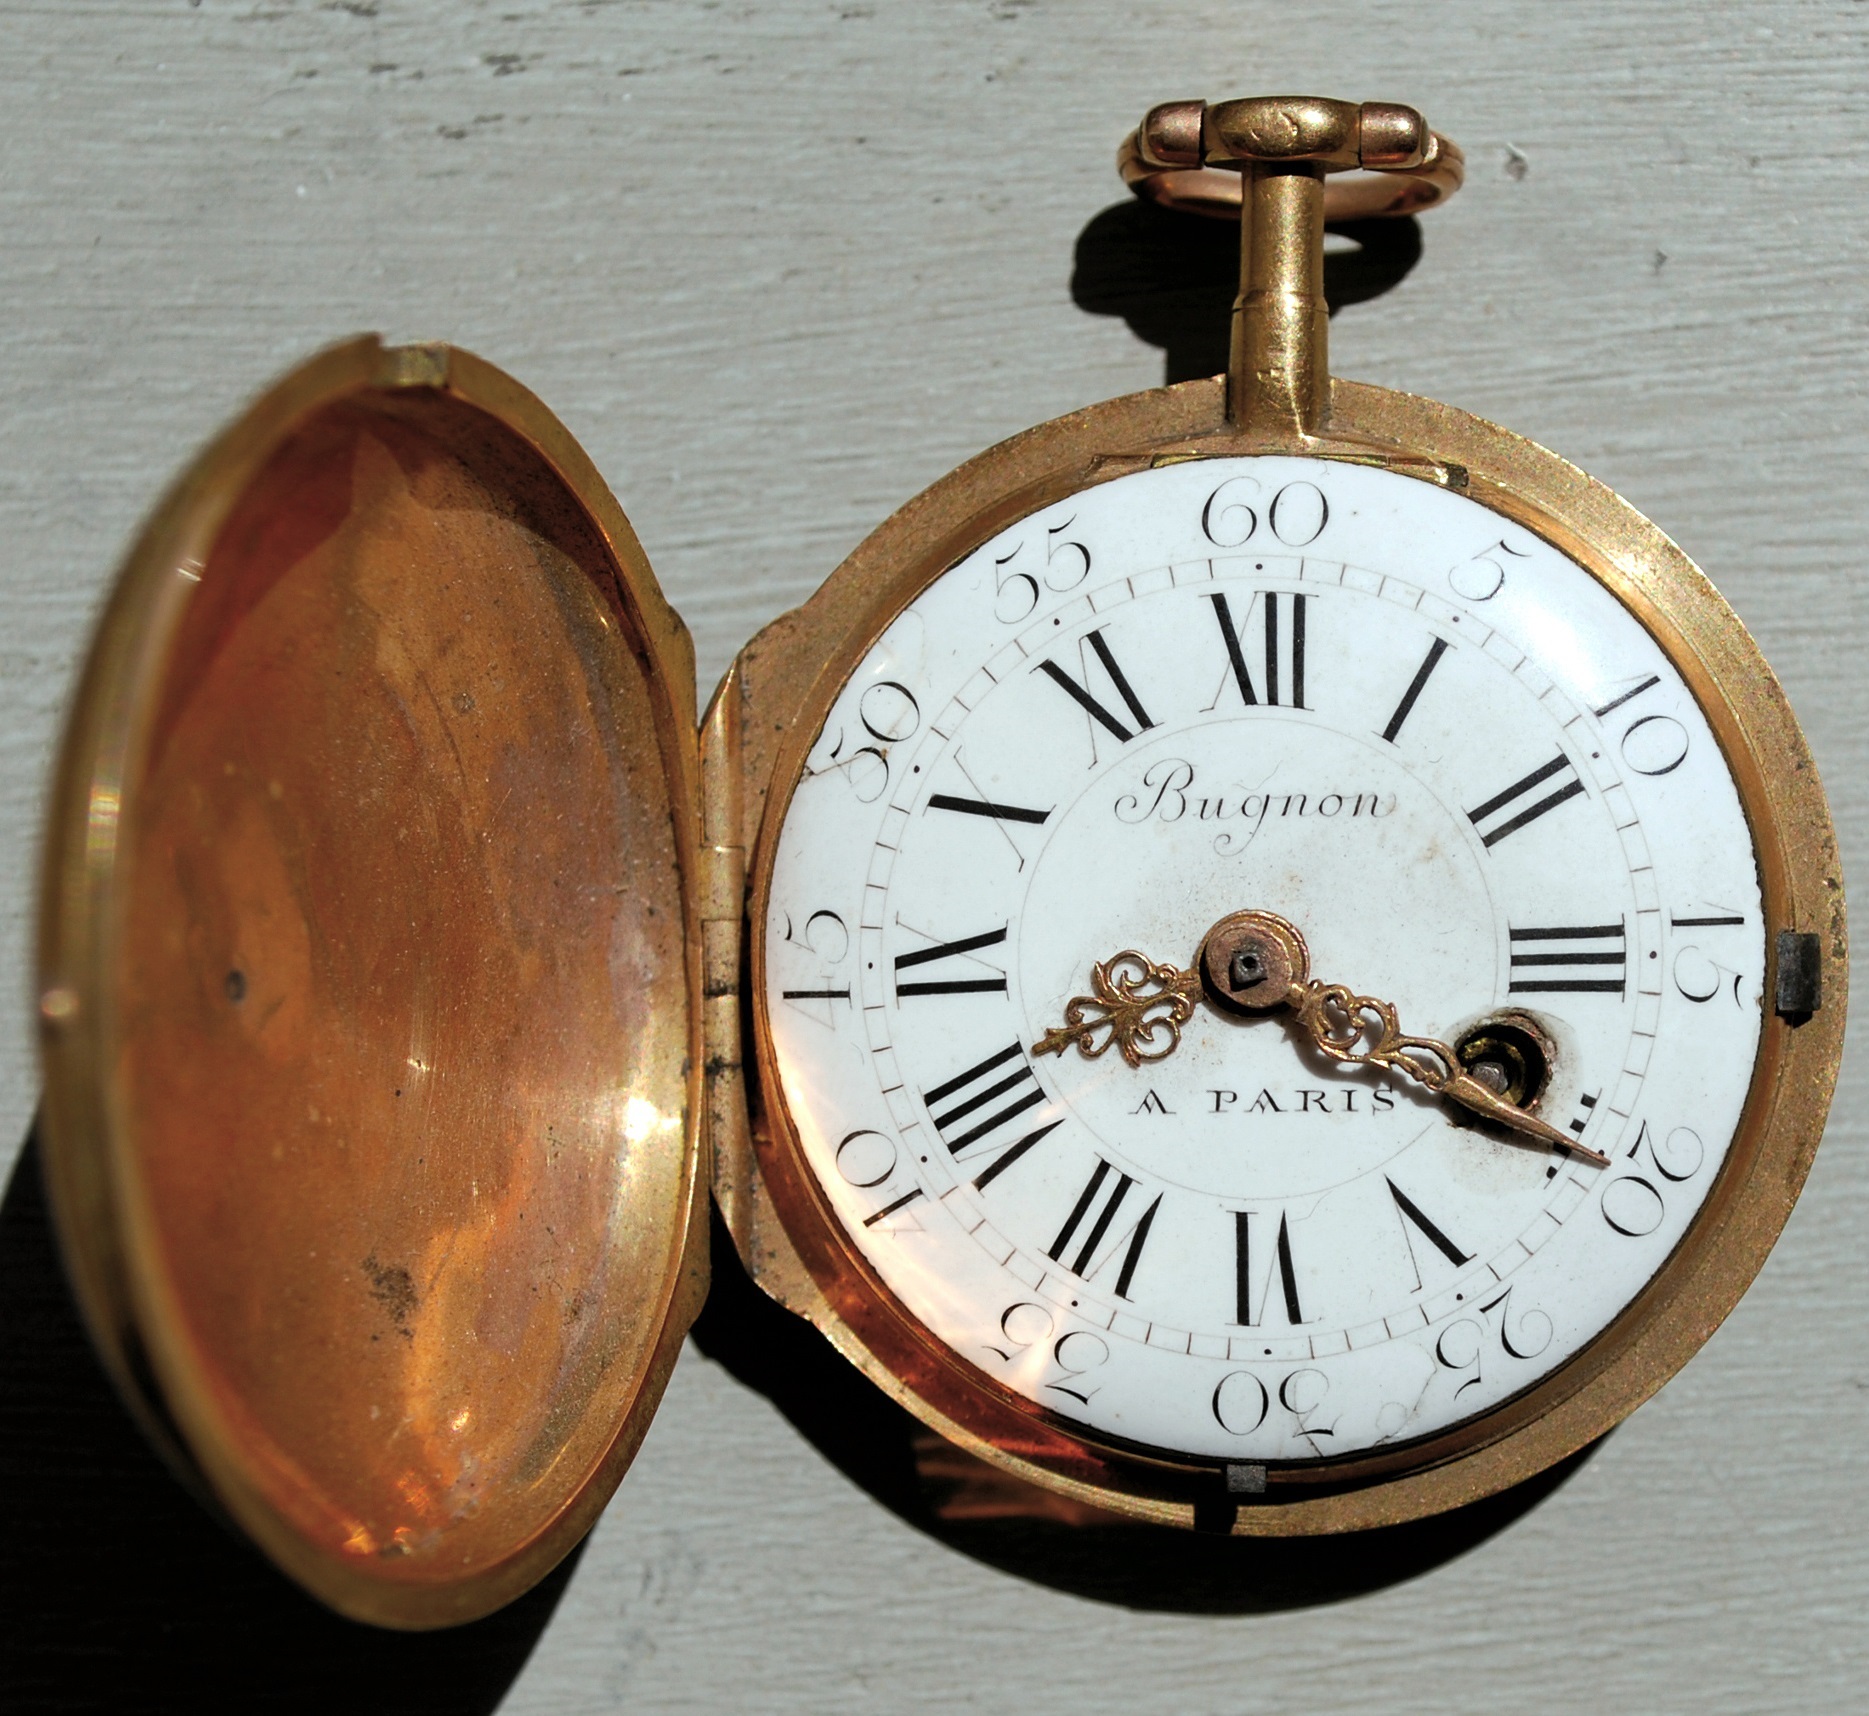 Pamiątkowy zegarek Kościuszko. Polpora Kościuszko